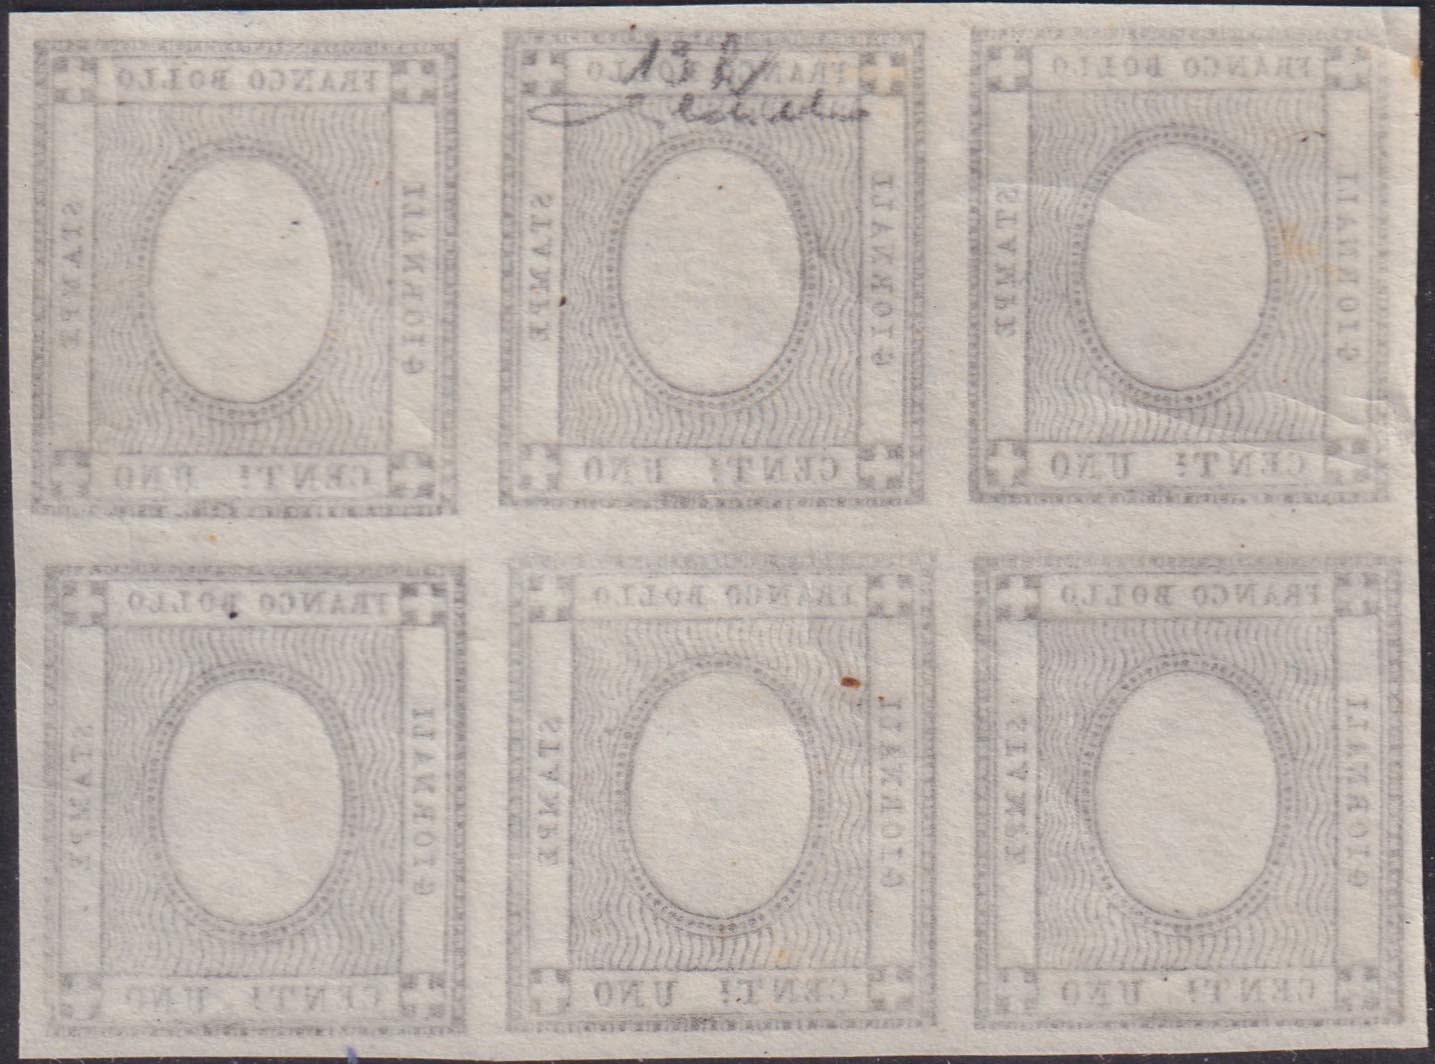 1861 - Stampati, c. 1 grigio nero, blocco di 6 senza impressione della cifra "1", nuovo integro (19h)